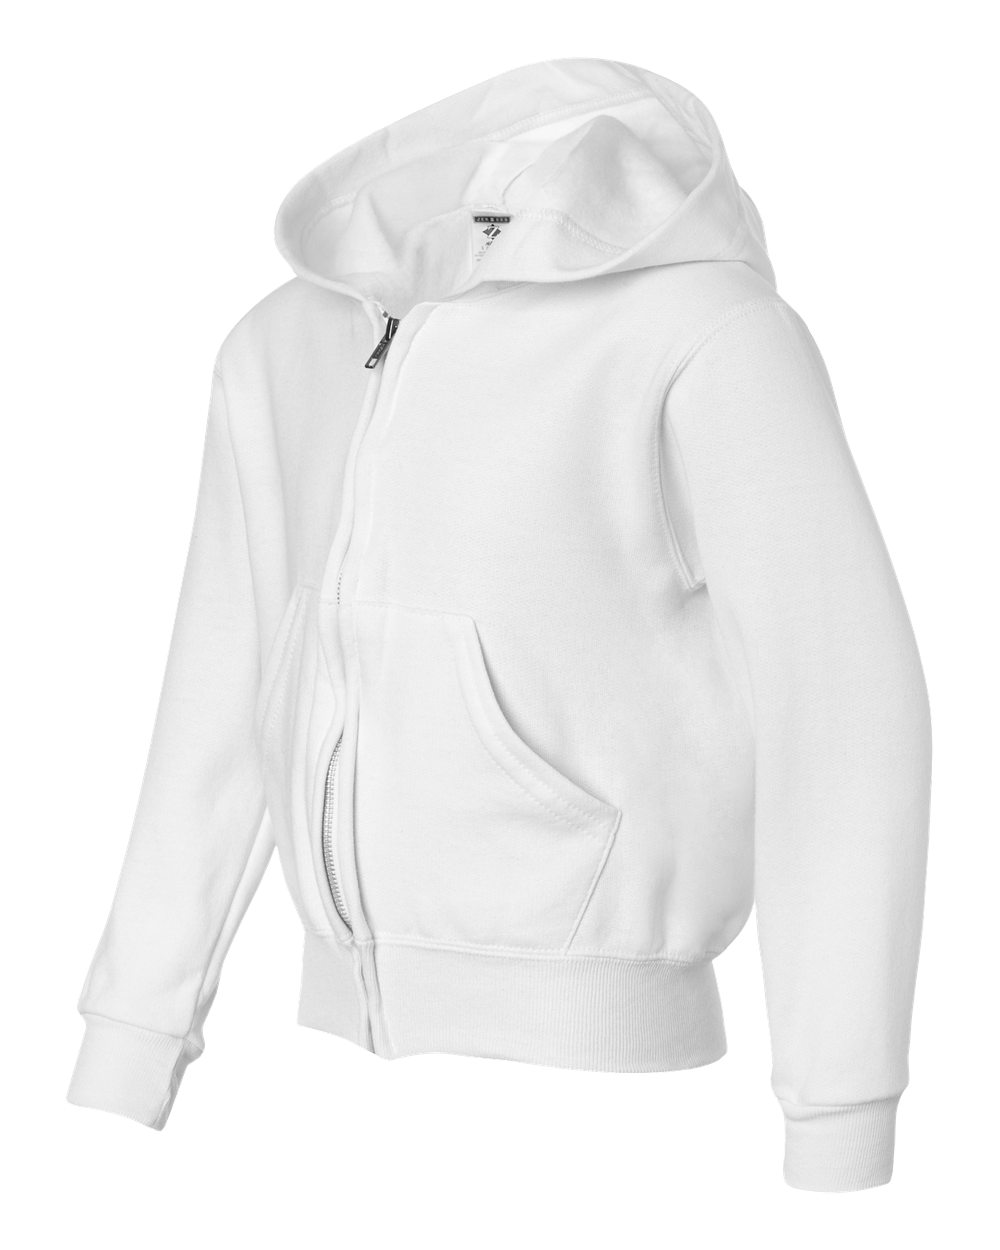 JERZEES 993BR - NuBlend Youth Full-Zip Hooded Sweatshirt